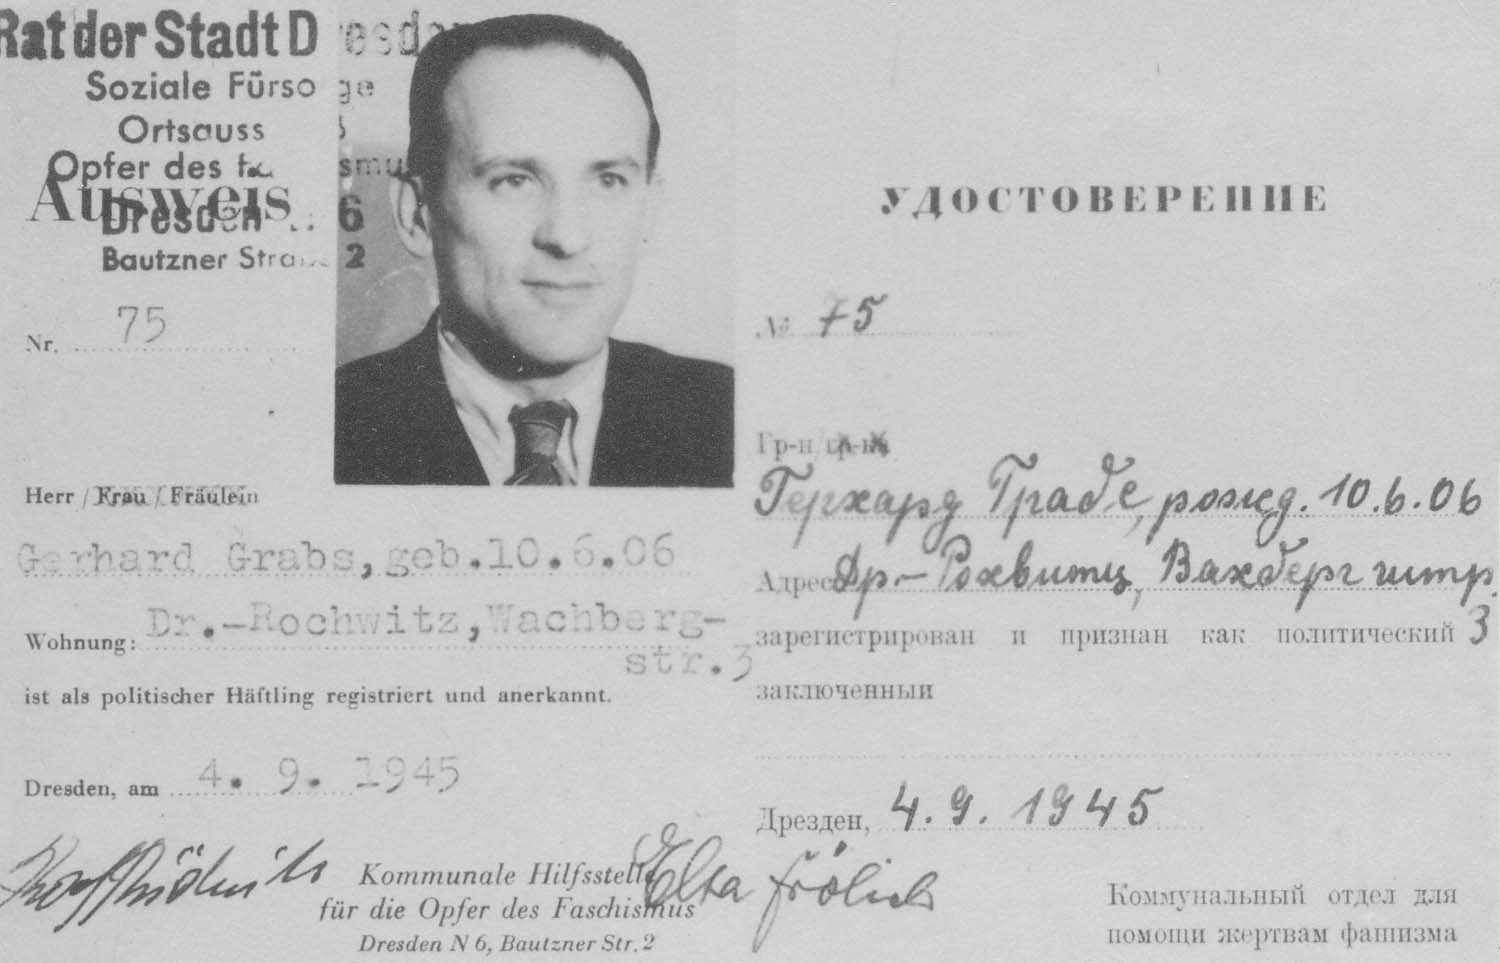 Ausweis für Gerhard Grabs vom 4.9.1945